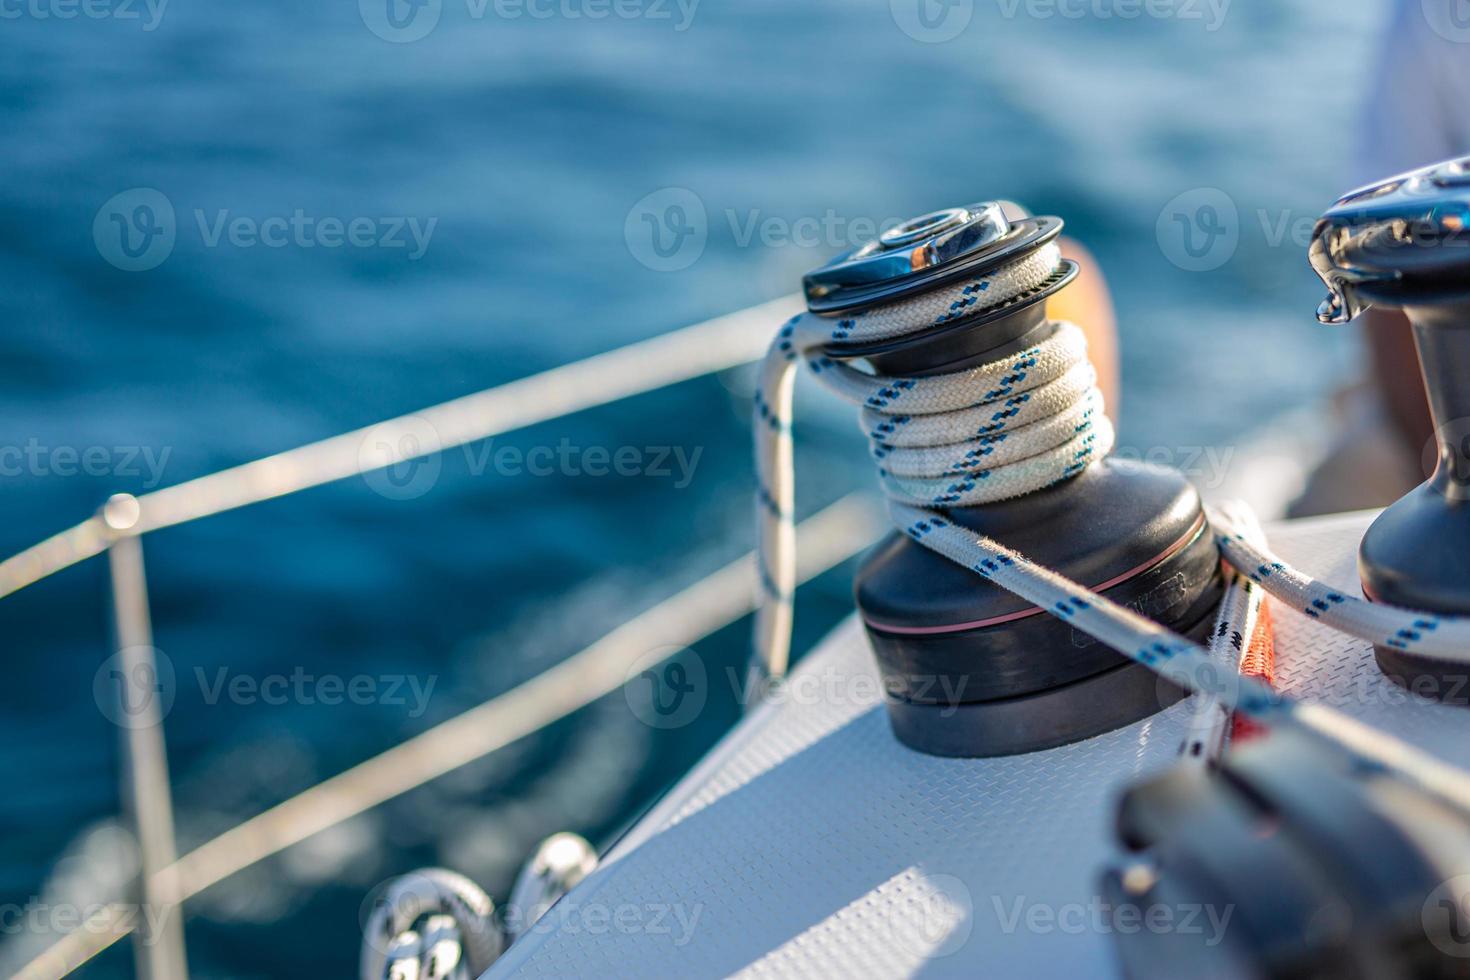 Detalles del equipo de vela en un barco cuando se navega por el agua en un día soleado foto